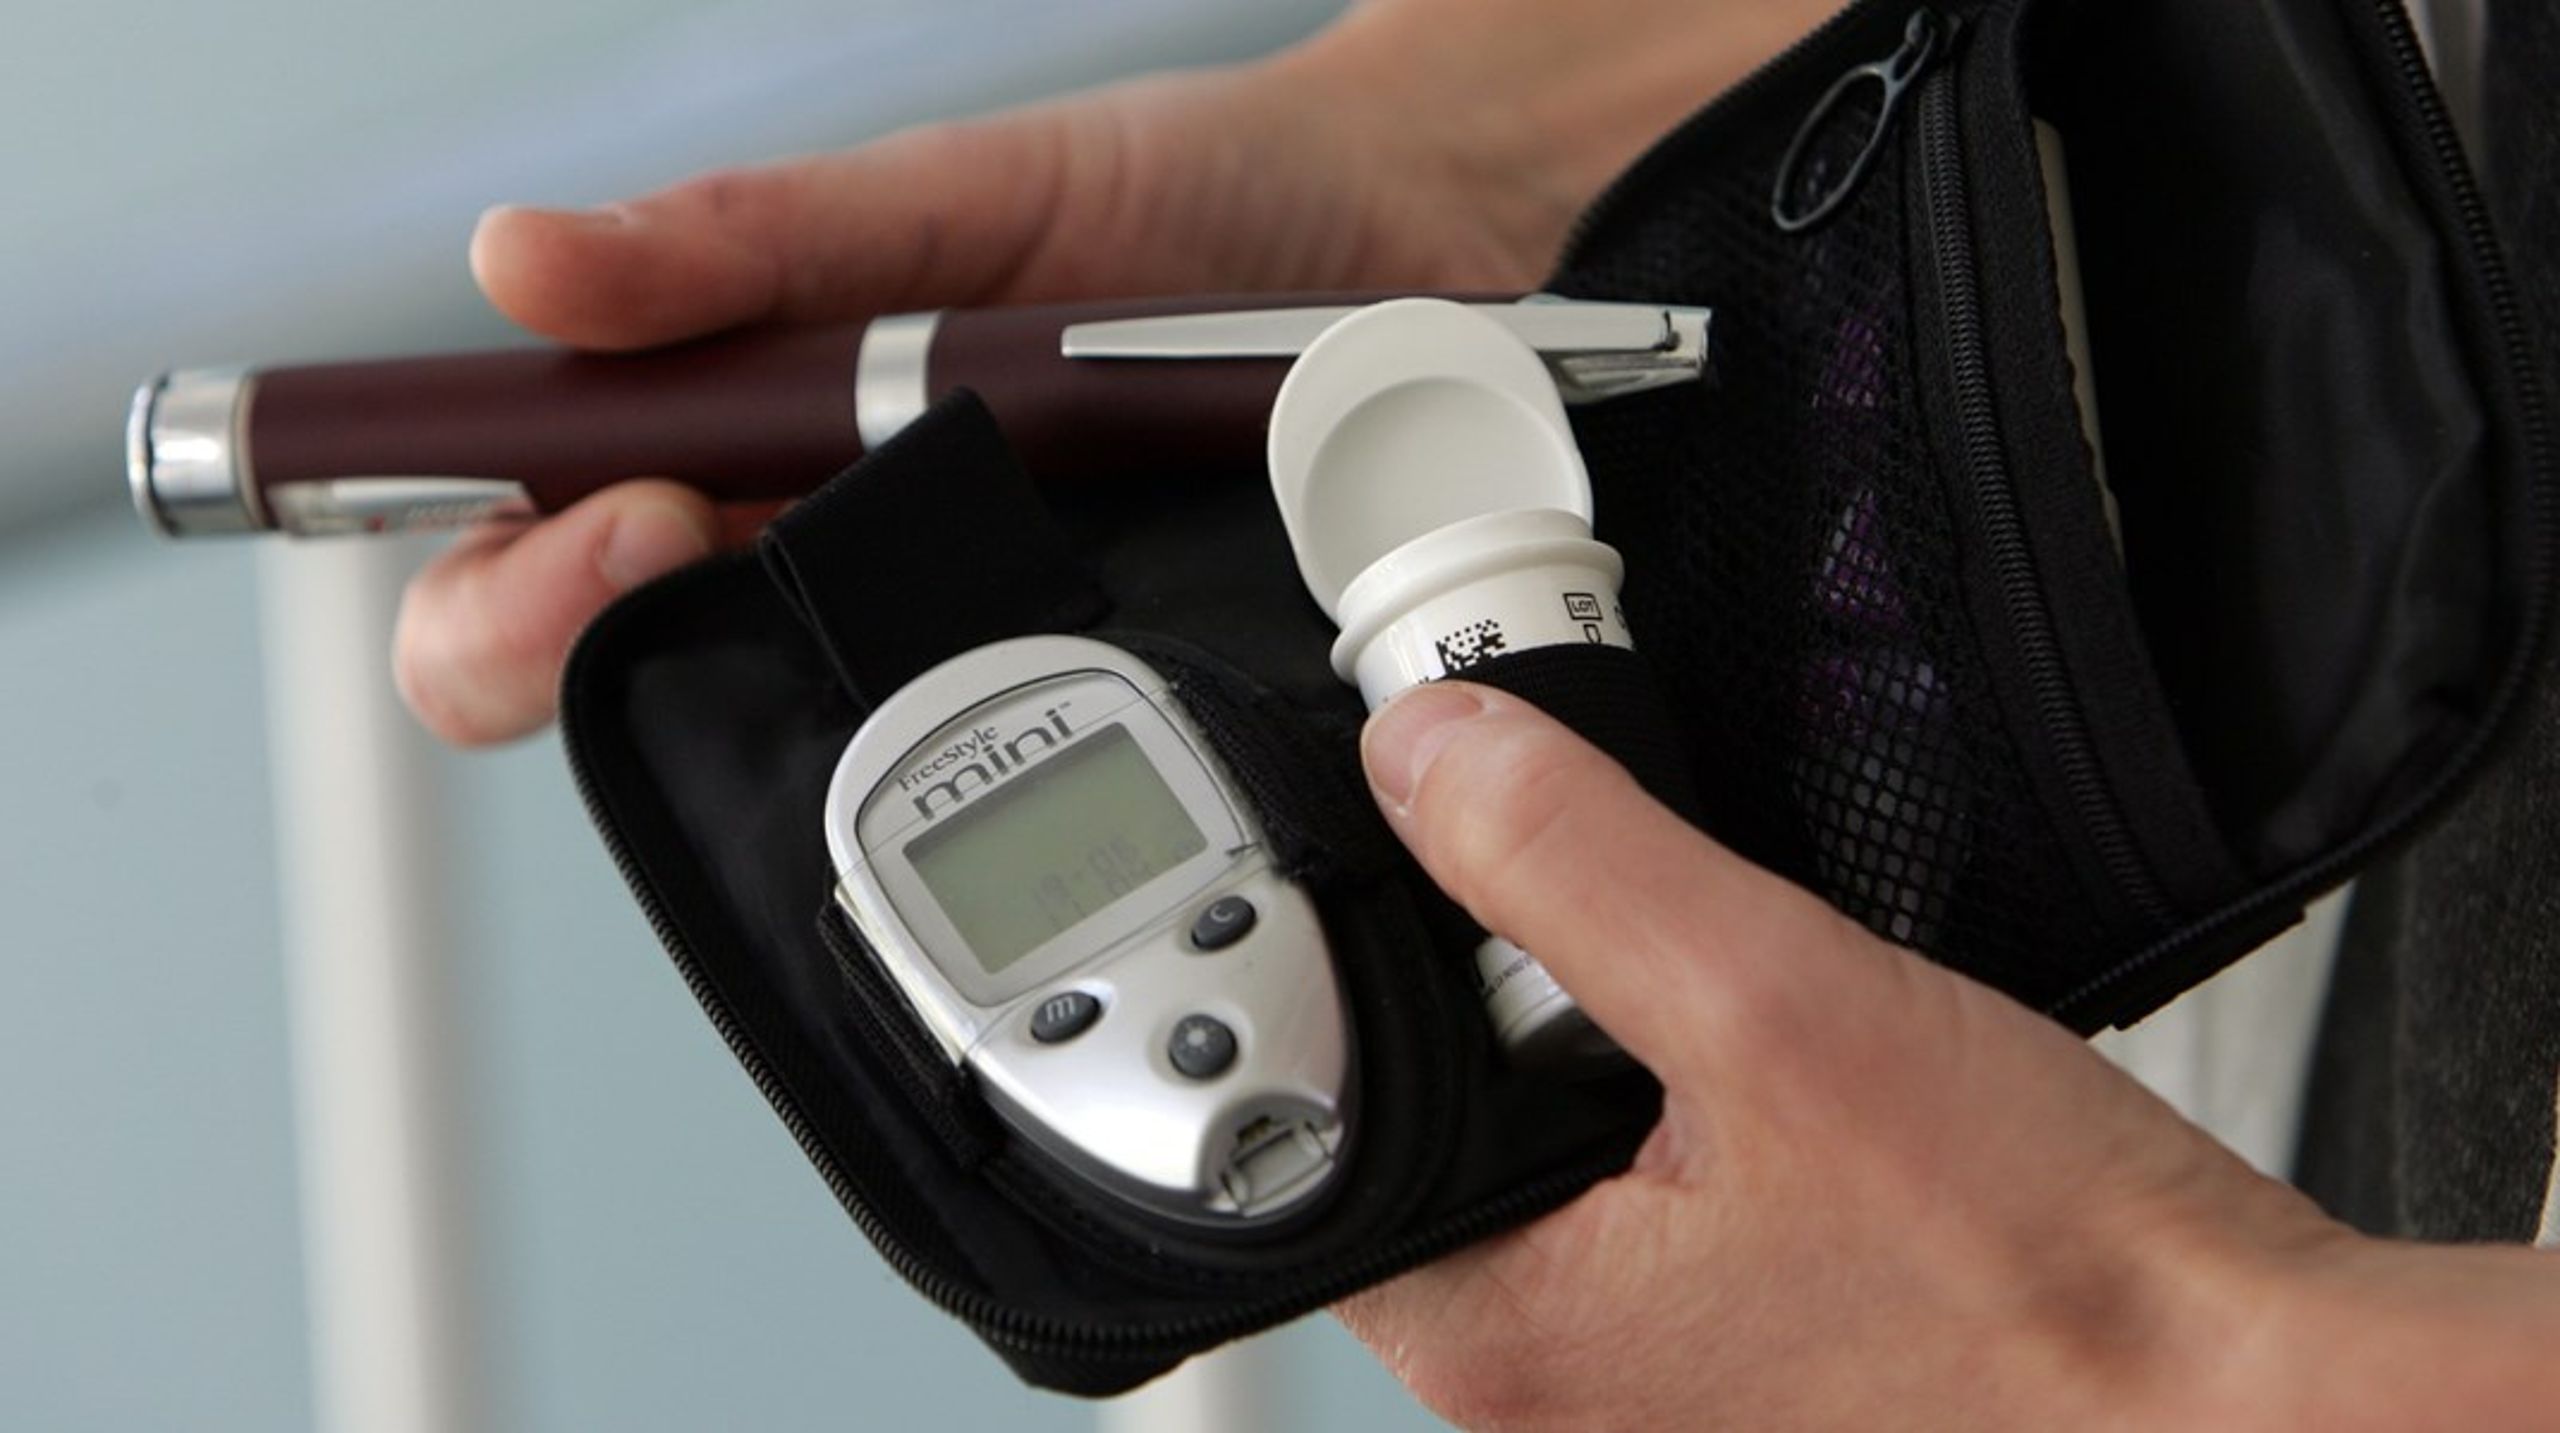 Vi behöver en ökad tillgång till tekniska hjälpmedel, så fler personer med diabetes kan följa sina blodsockervärden och optimera sin egenvård, skriver debattören.